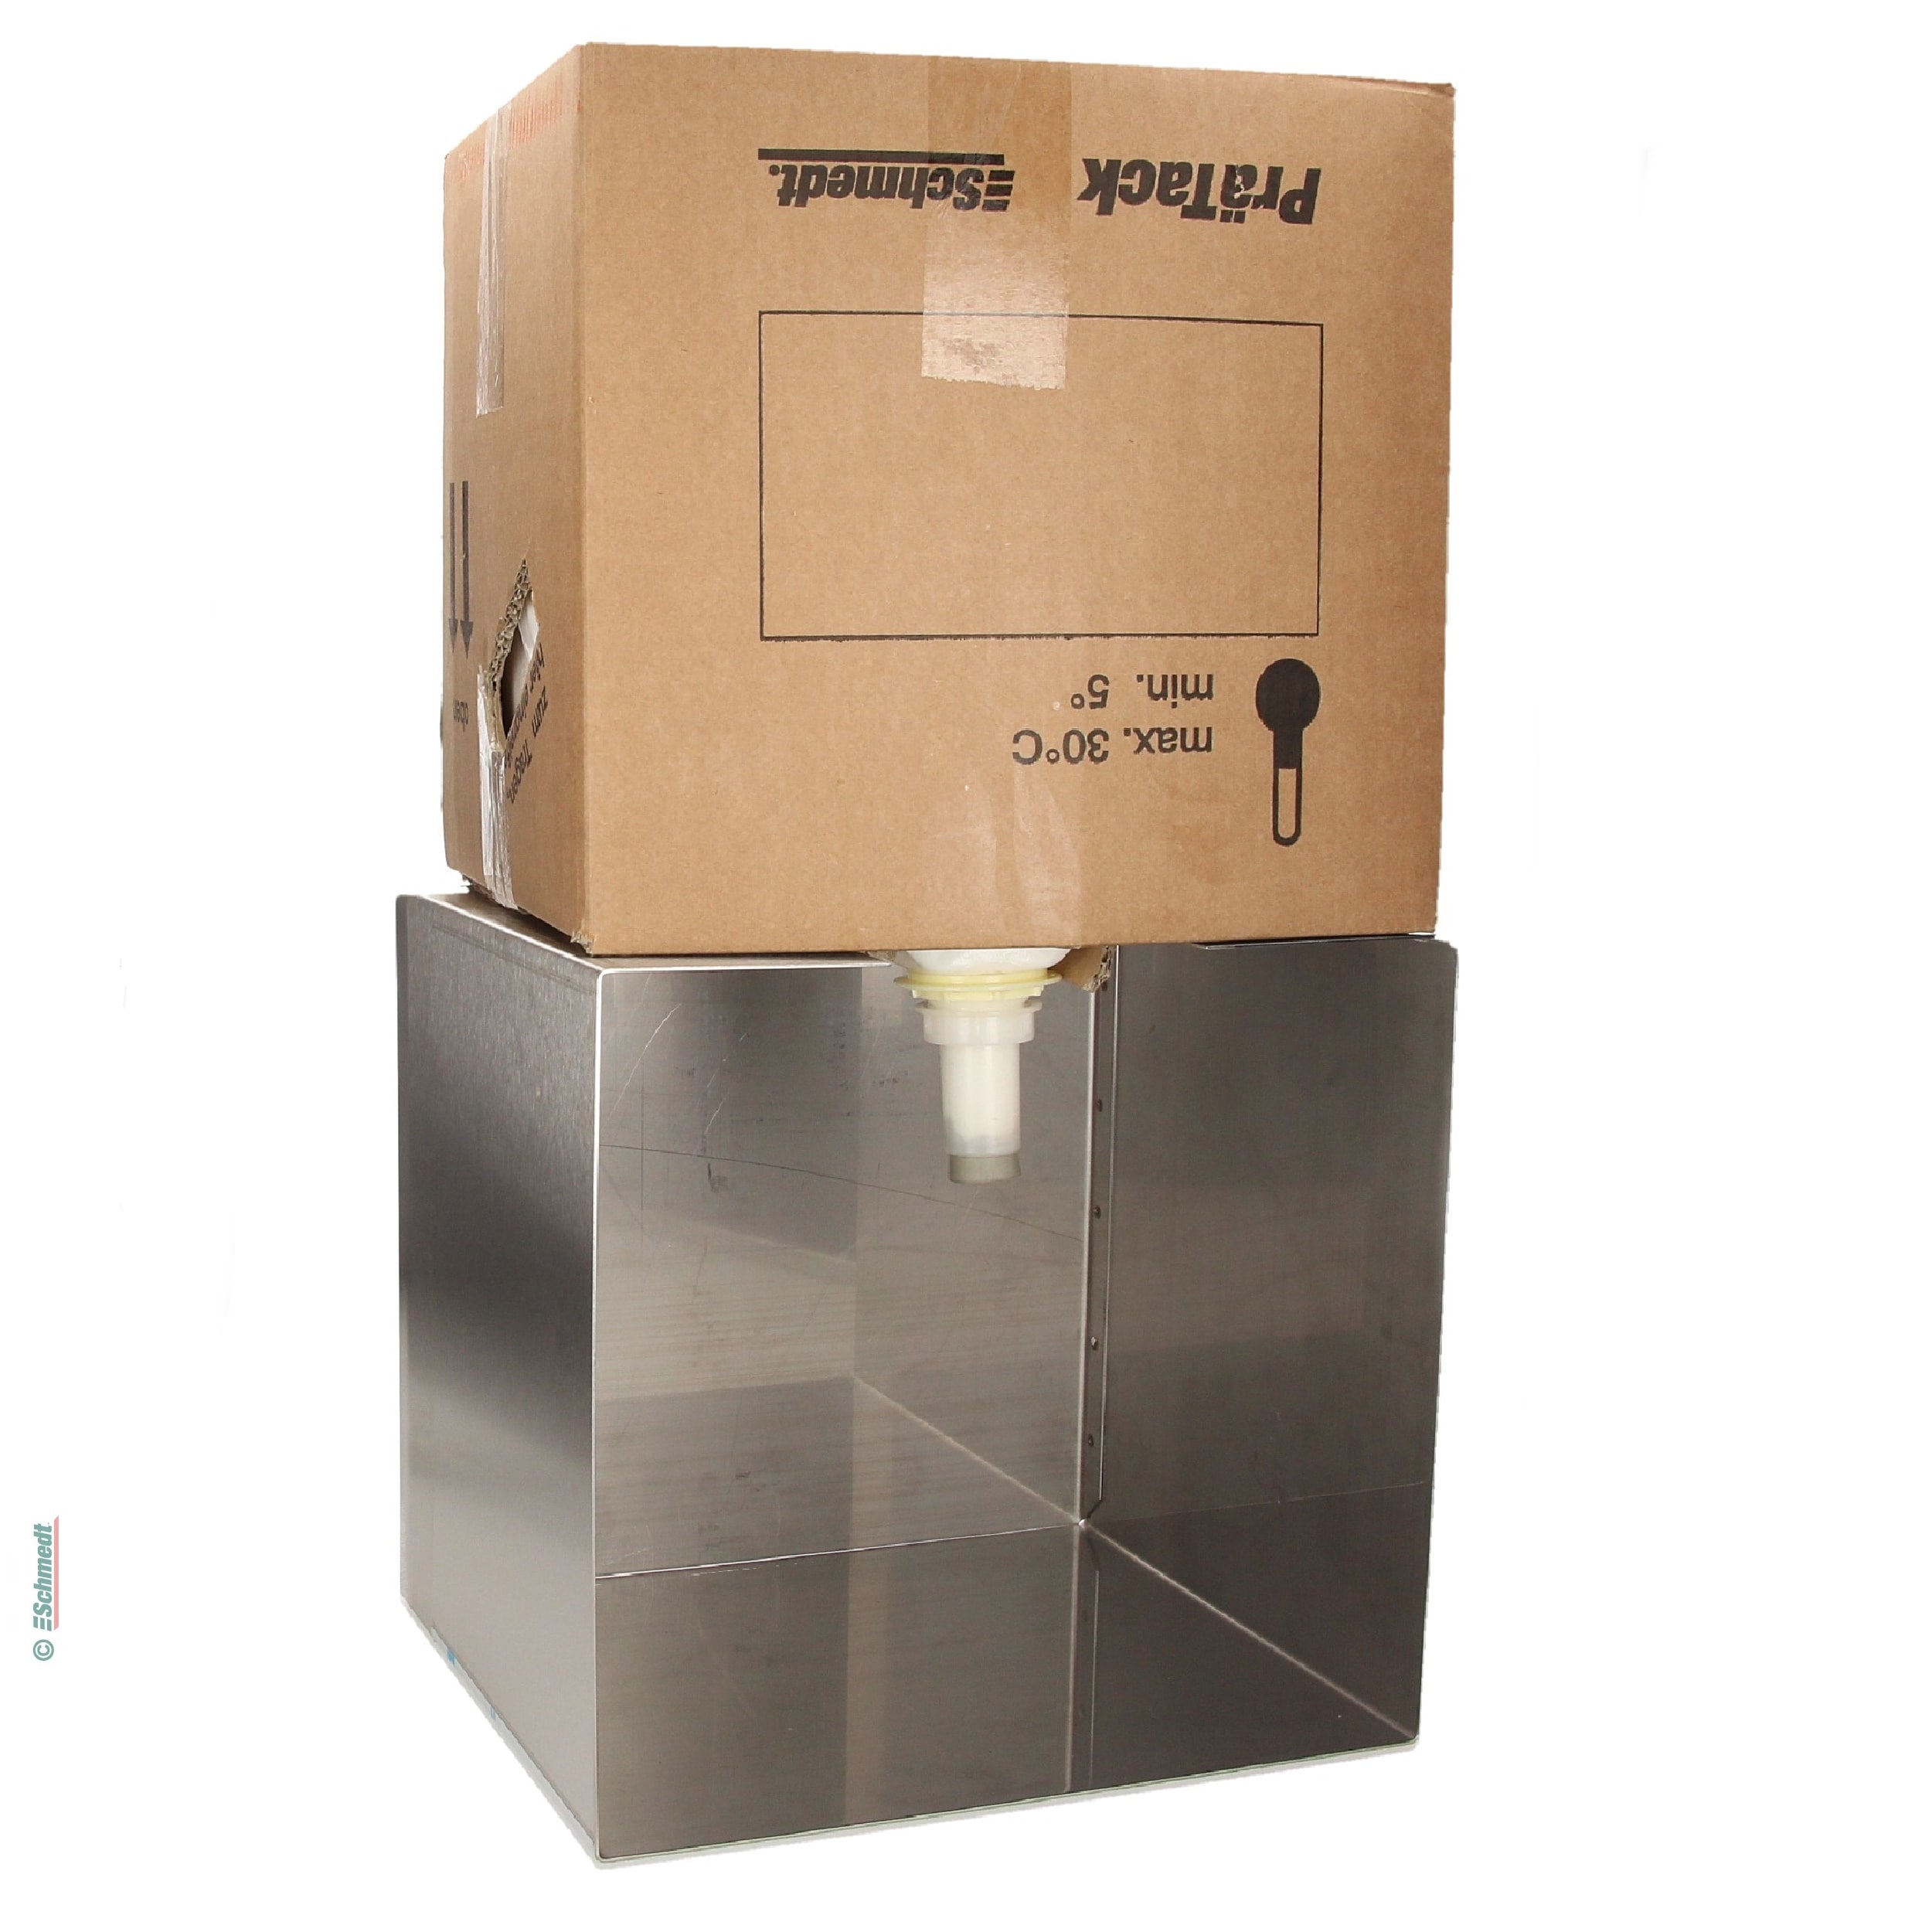 Abfüllstation für PräTack-Klebstoffe - in Bag-in-Box-Verpackungen (alle Gebindegrößen) - PräTack-Karton öffnen, Kunststoffbeutel herausziehe... - Bild-1